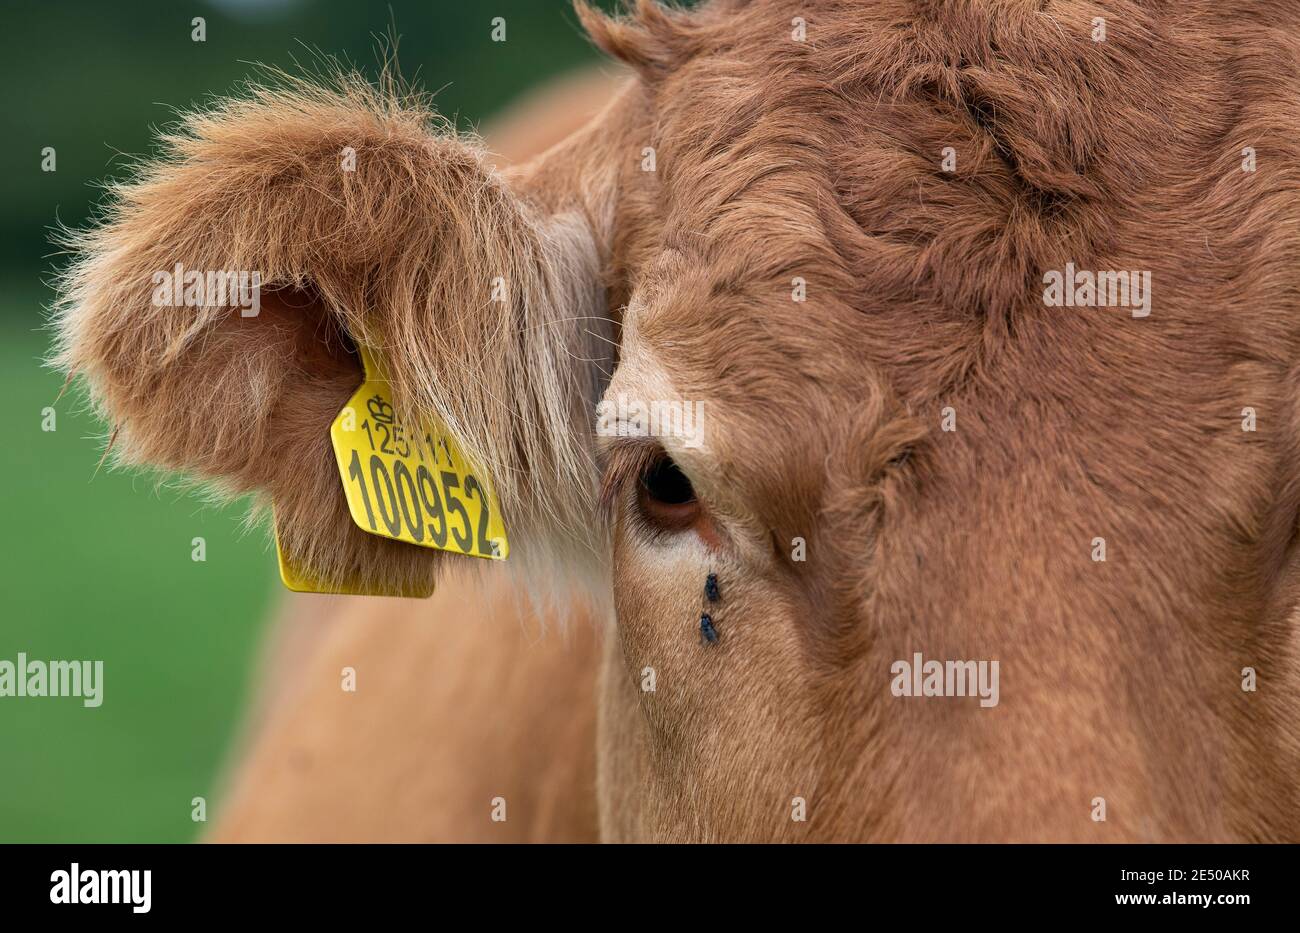 Gros plan d'un œil et d'une oreille de vache de bœuf limousin, indiquant le numéro de l'étiquette d'oreille à des fins d'identification. North Yorkshire, Royaume-Uni. Banque D'Images